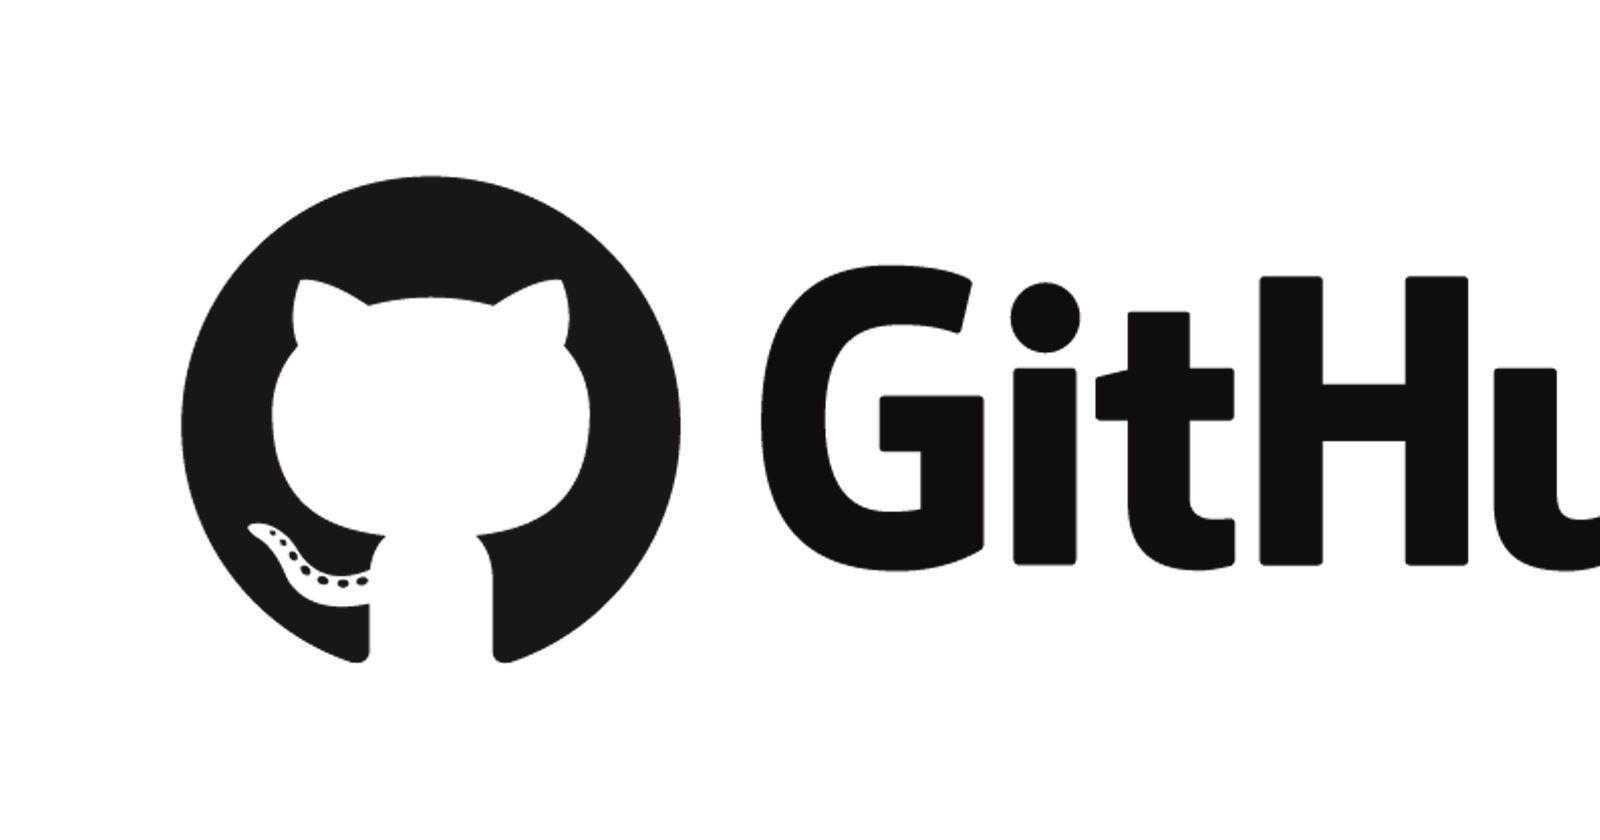 Hosting Your Website on Github